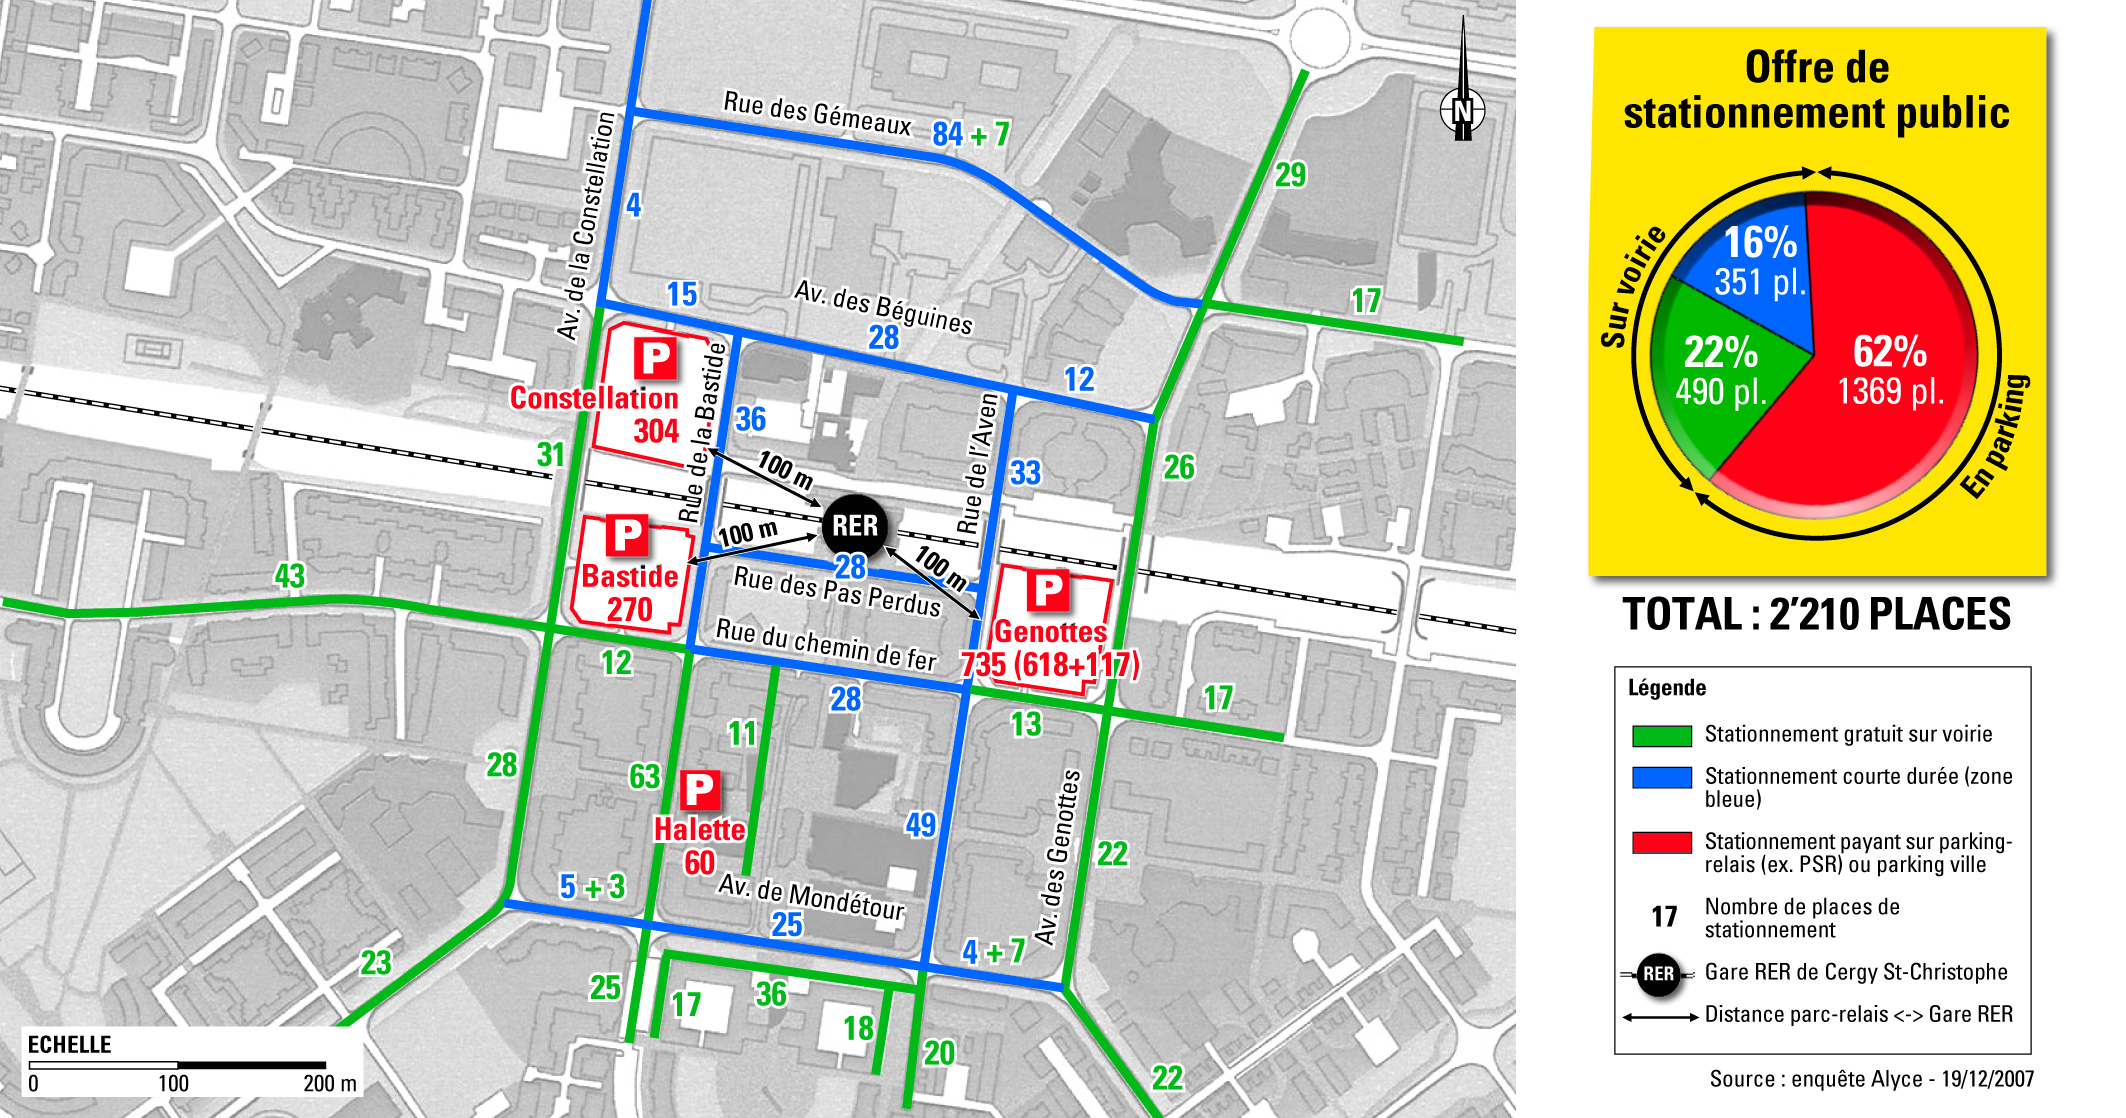 Etude de stationnement dans le cadre du projet de ville Axe Majeur-Horloge (Zac Cergy Puiseux)